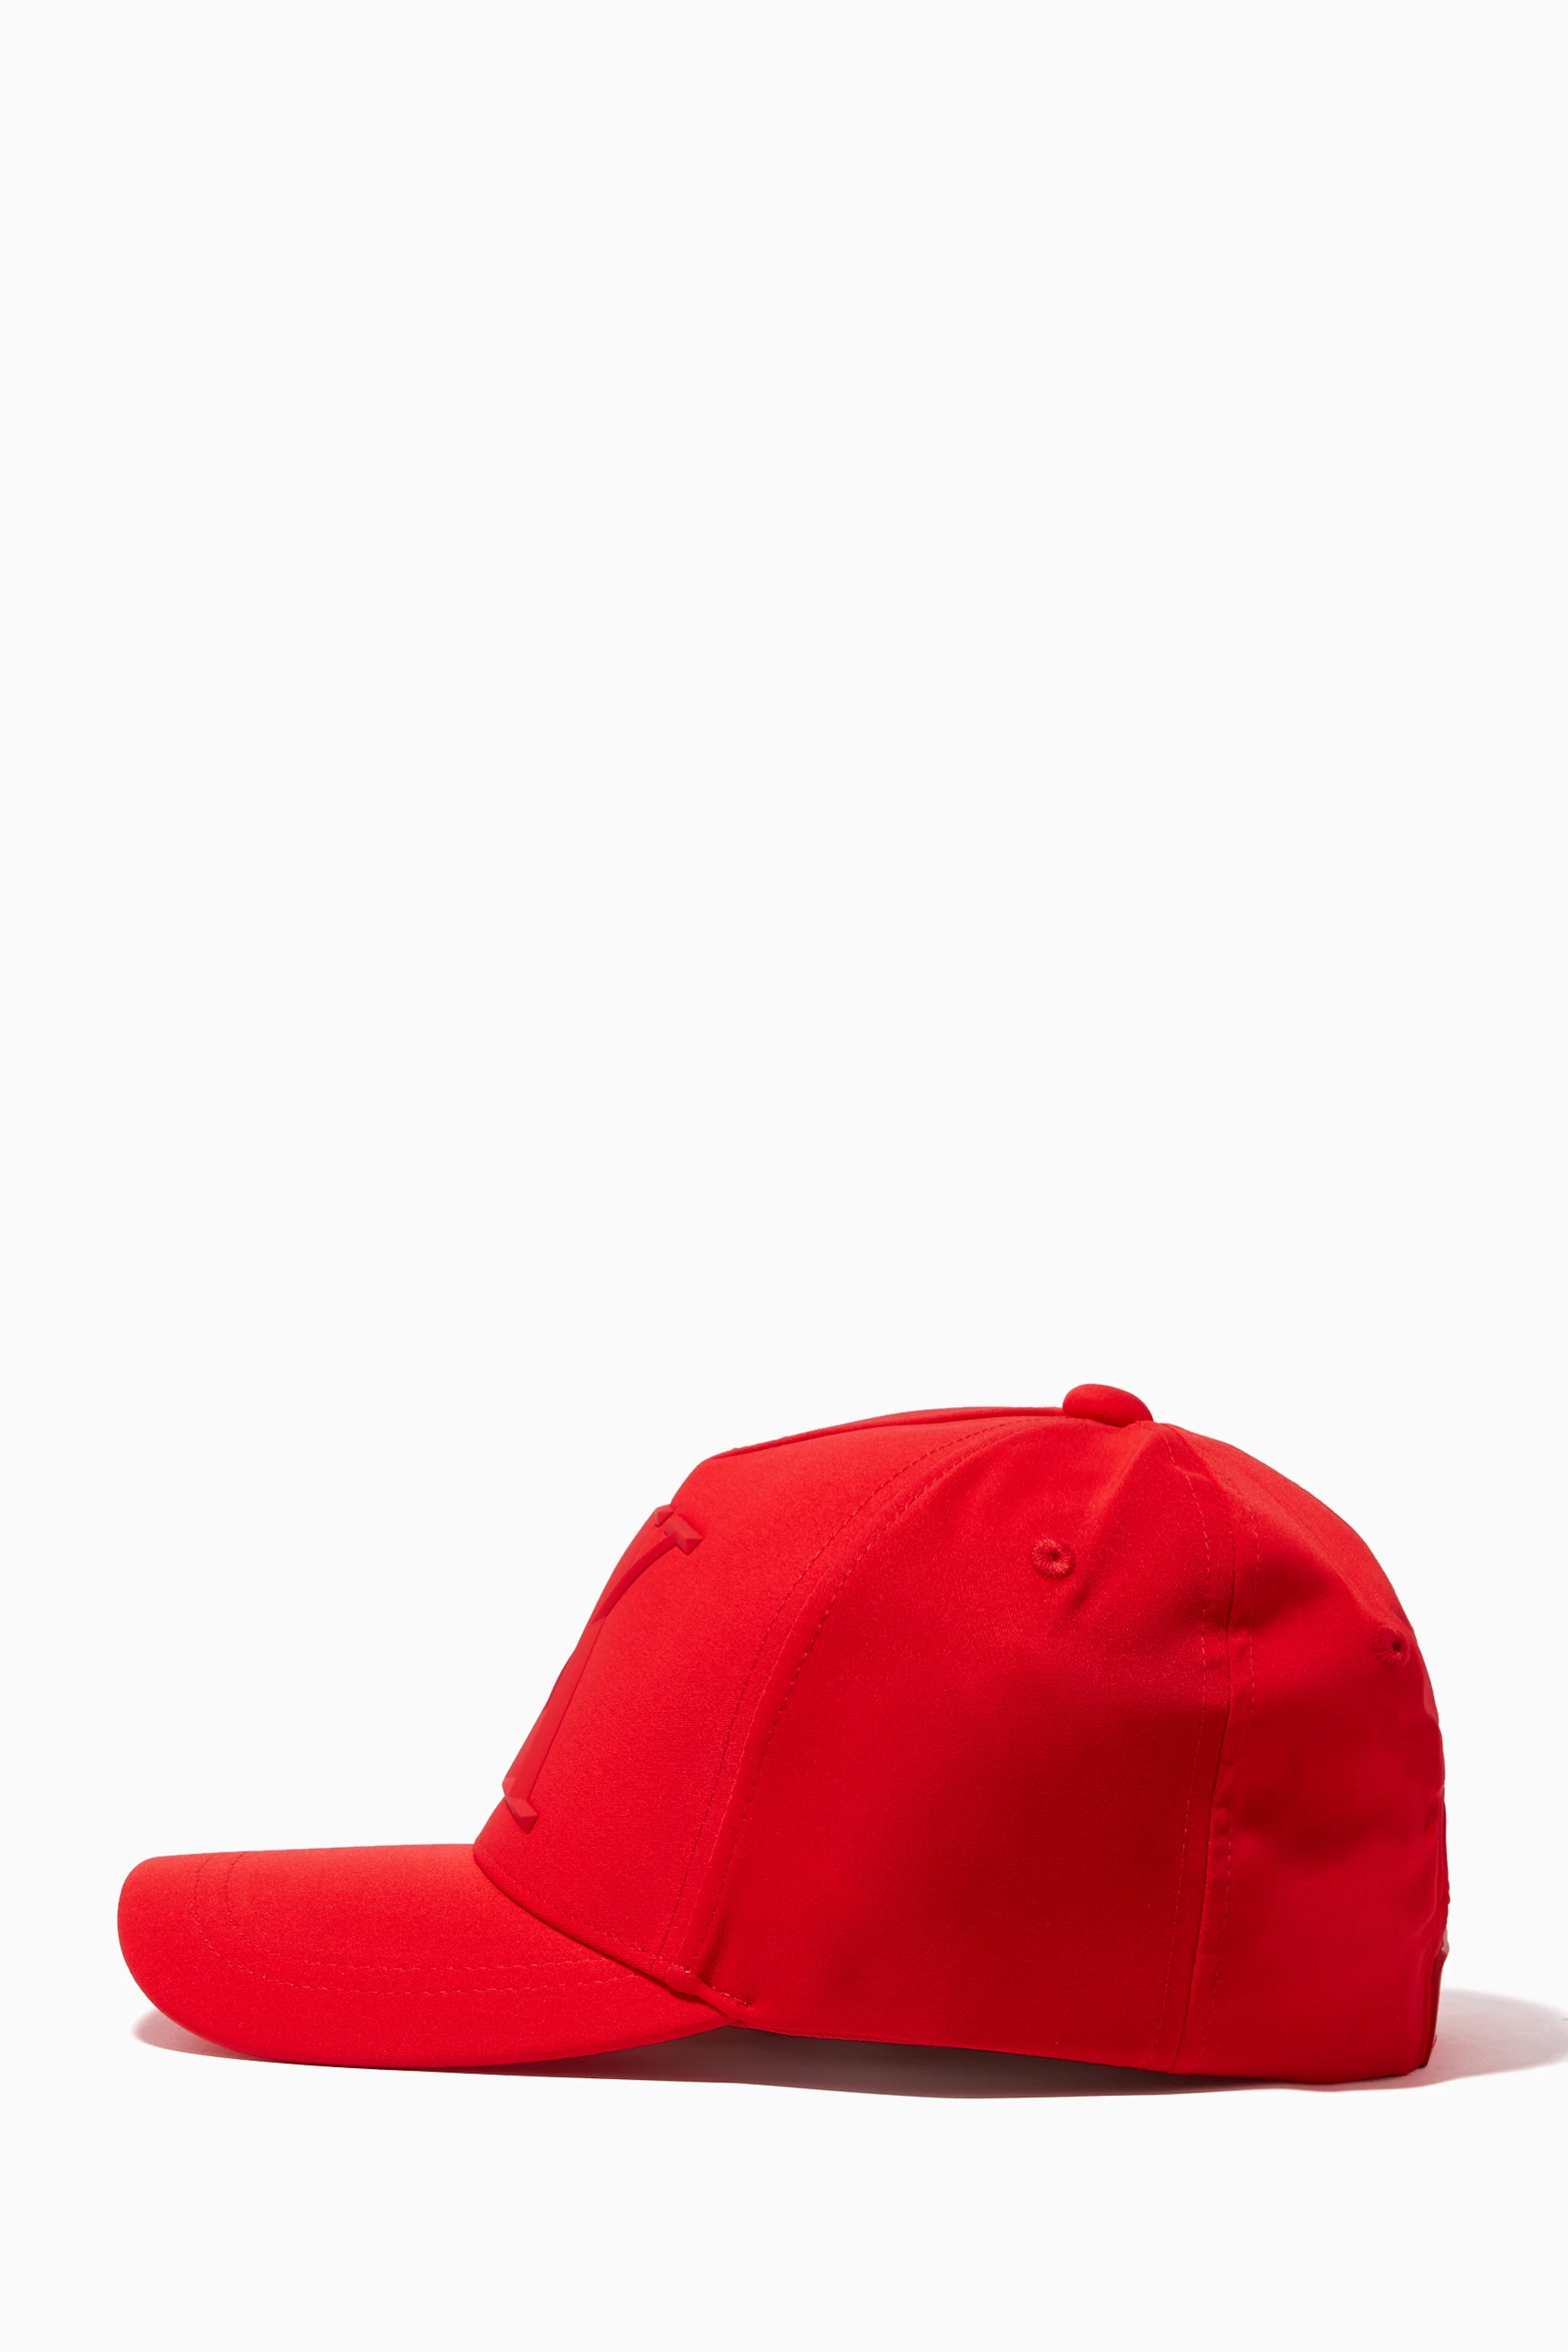 GetUSCart- AX ARMANI EXCHANGE Men's Baseball hat, Red & Black